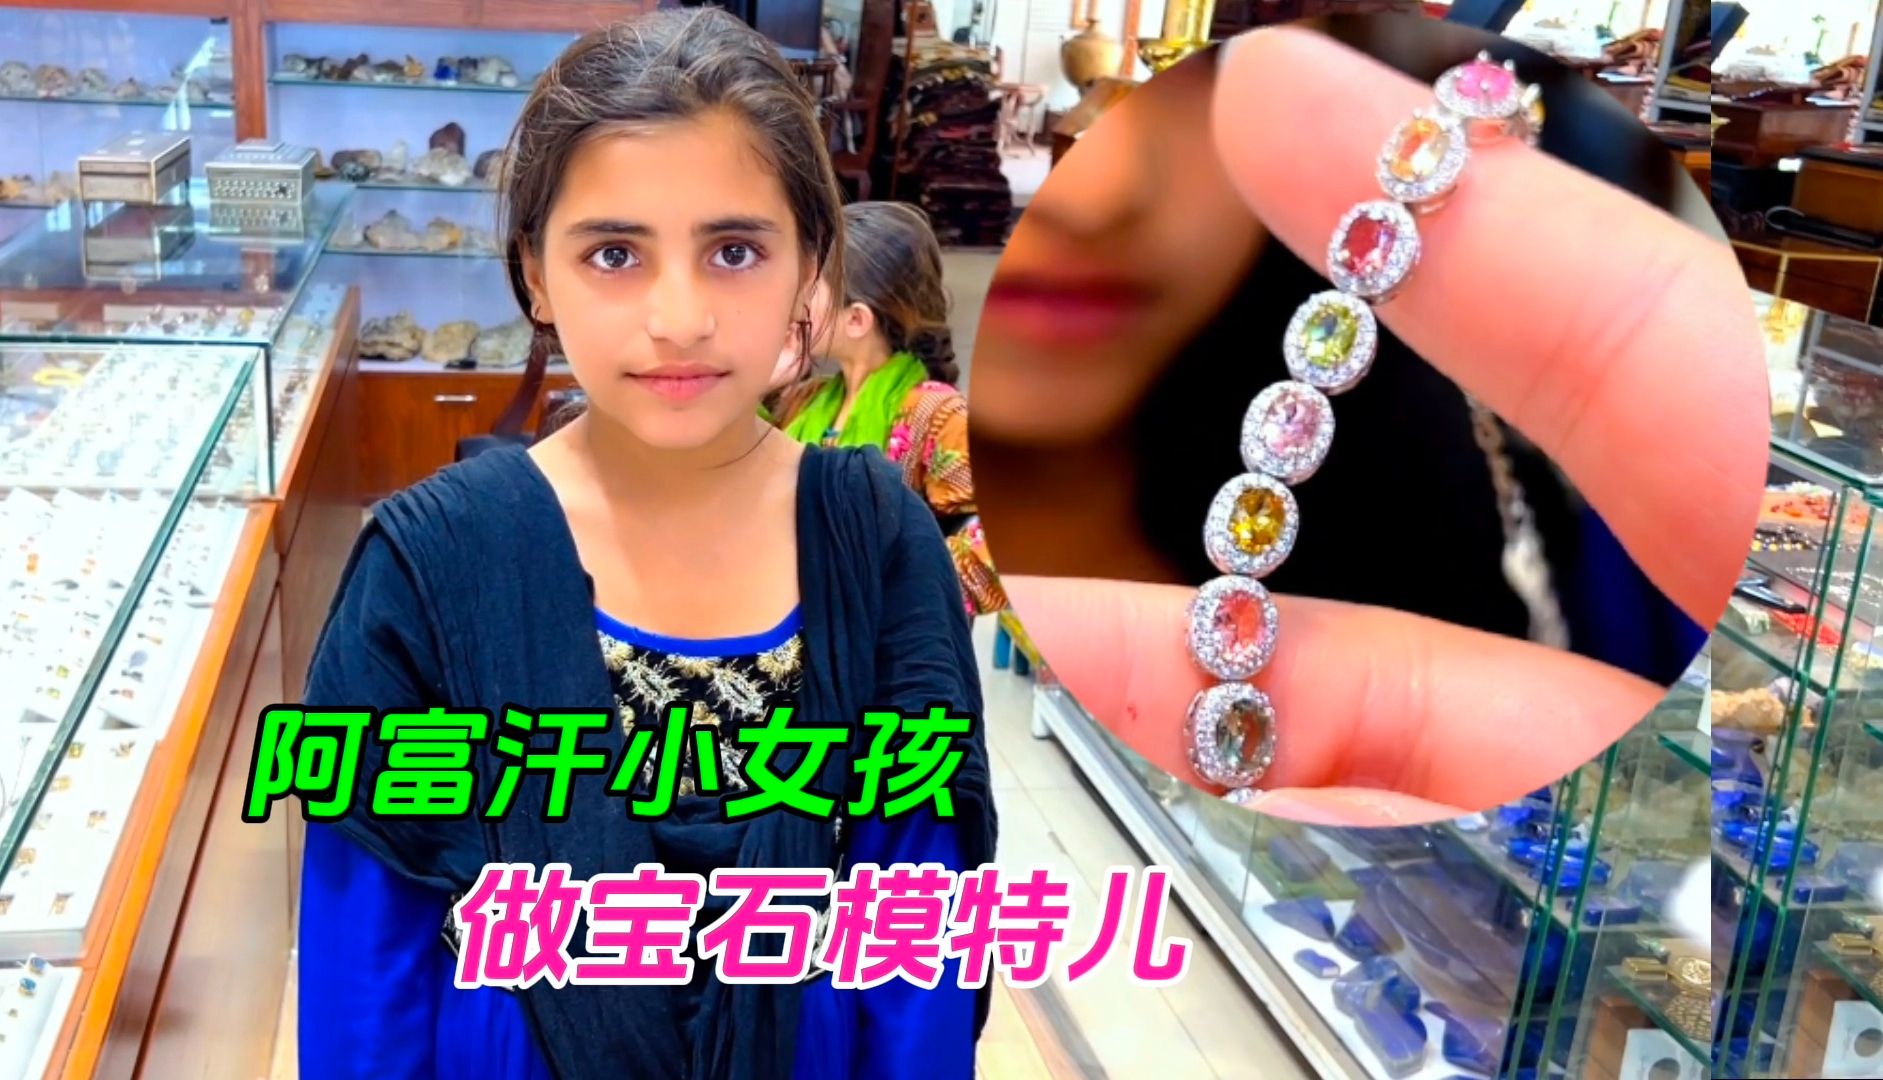 美丽的阿富汗难民小女孩给我们做宝石模特儿